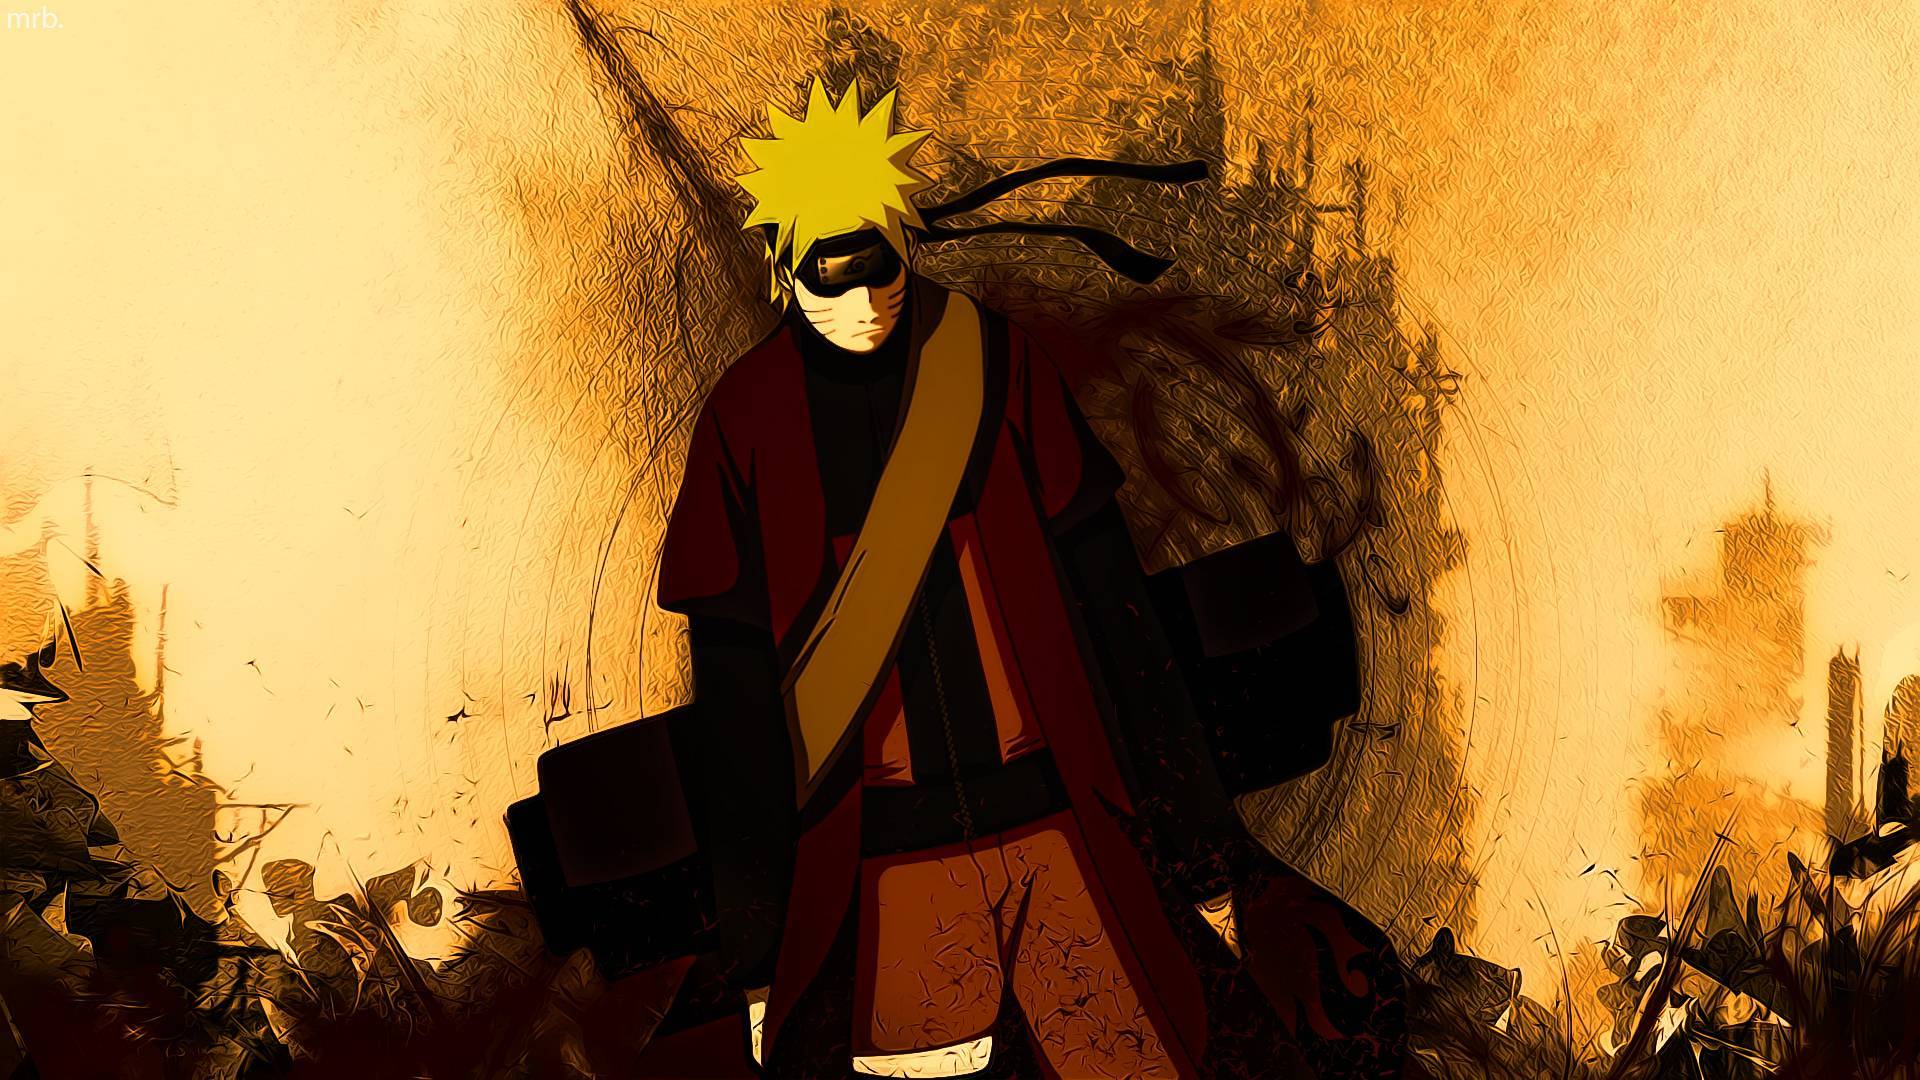 1. "Naruto Uzumaki" from Naruto - wide 2